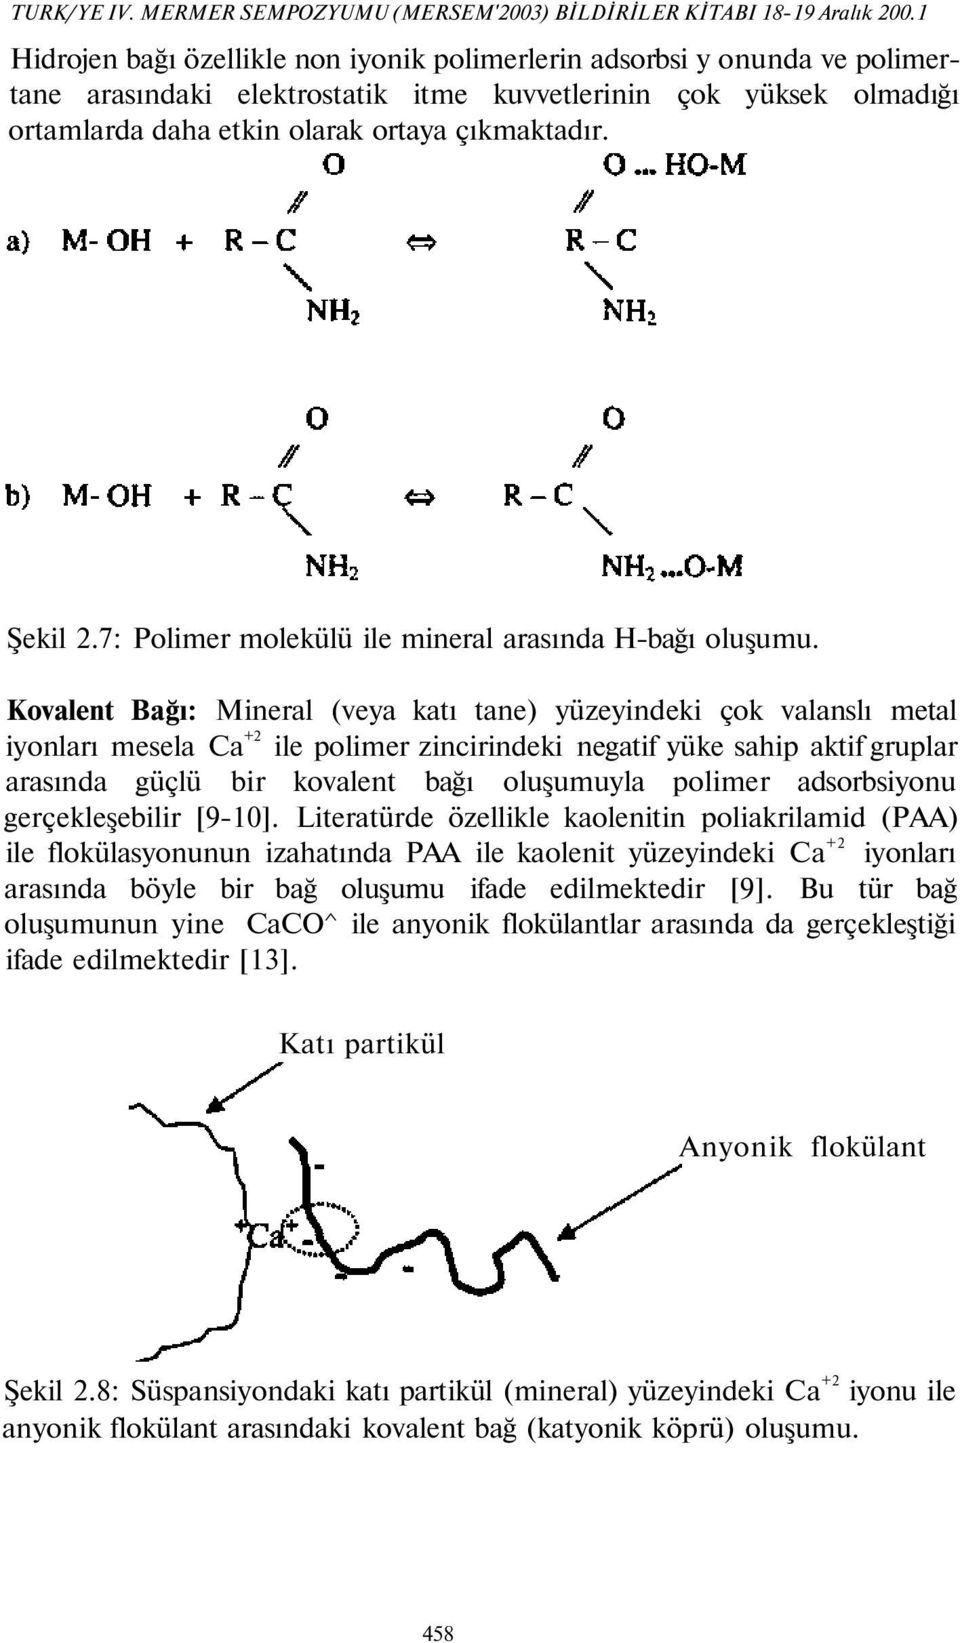 Şekil 2.7: Polimer molekülü ile mineral arasında H-bağı oluşumu.